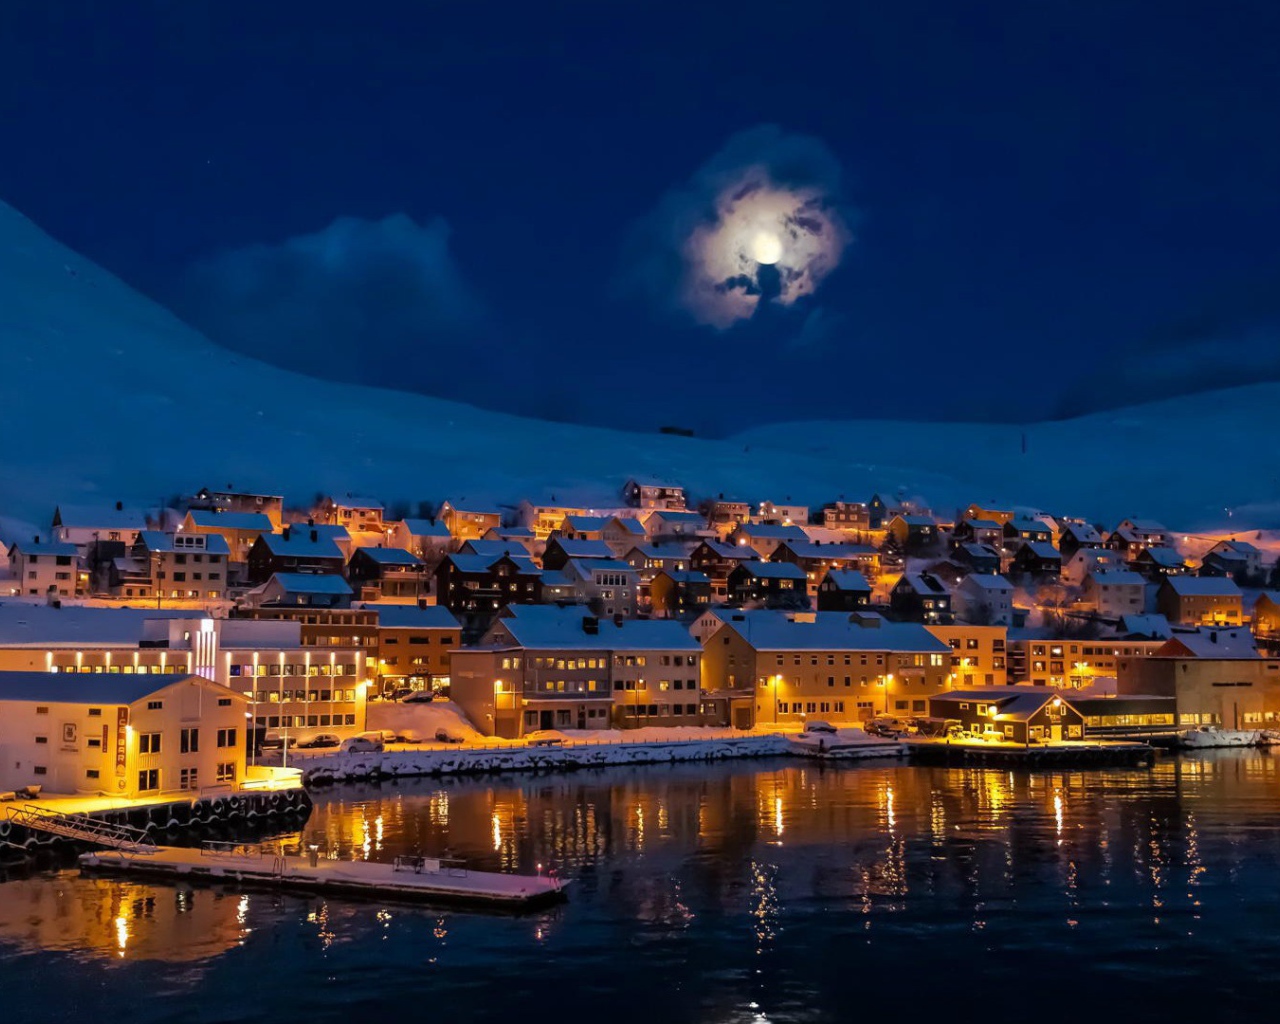 Луна над городом Альту, Норвегия